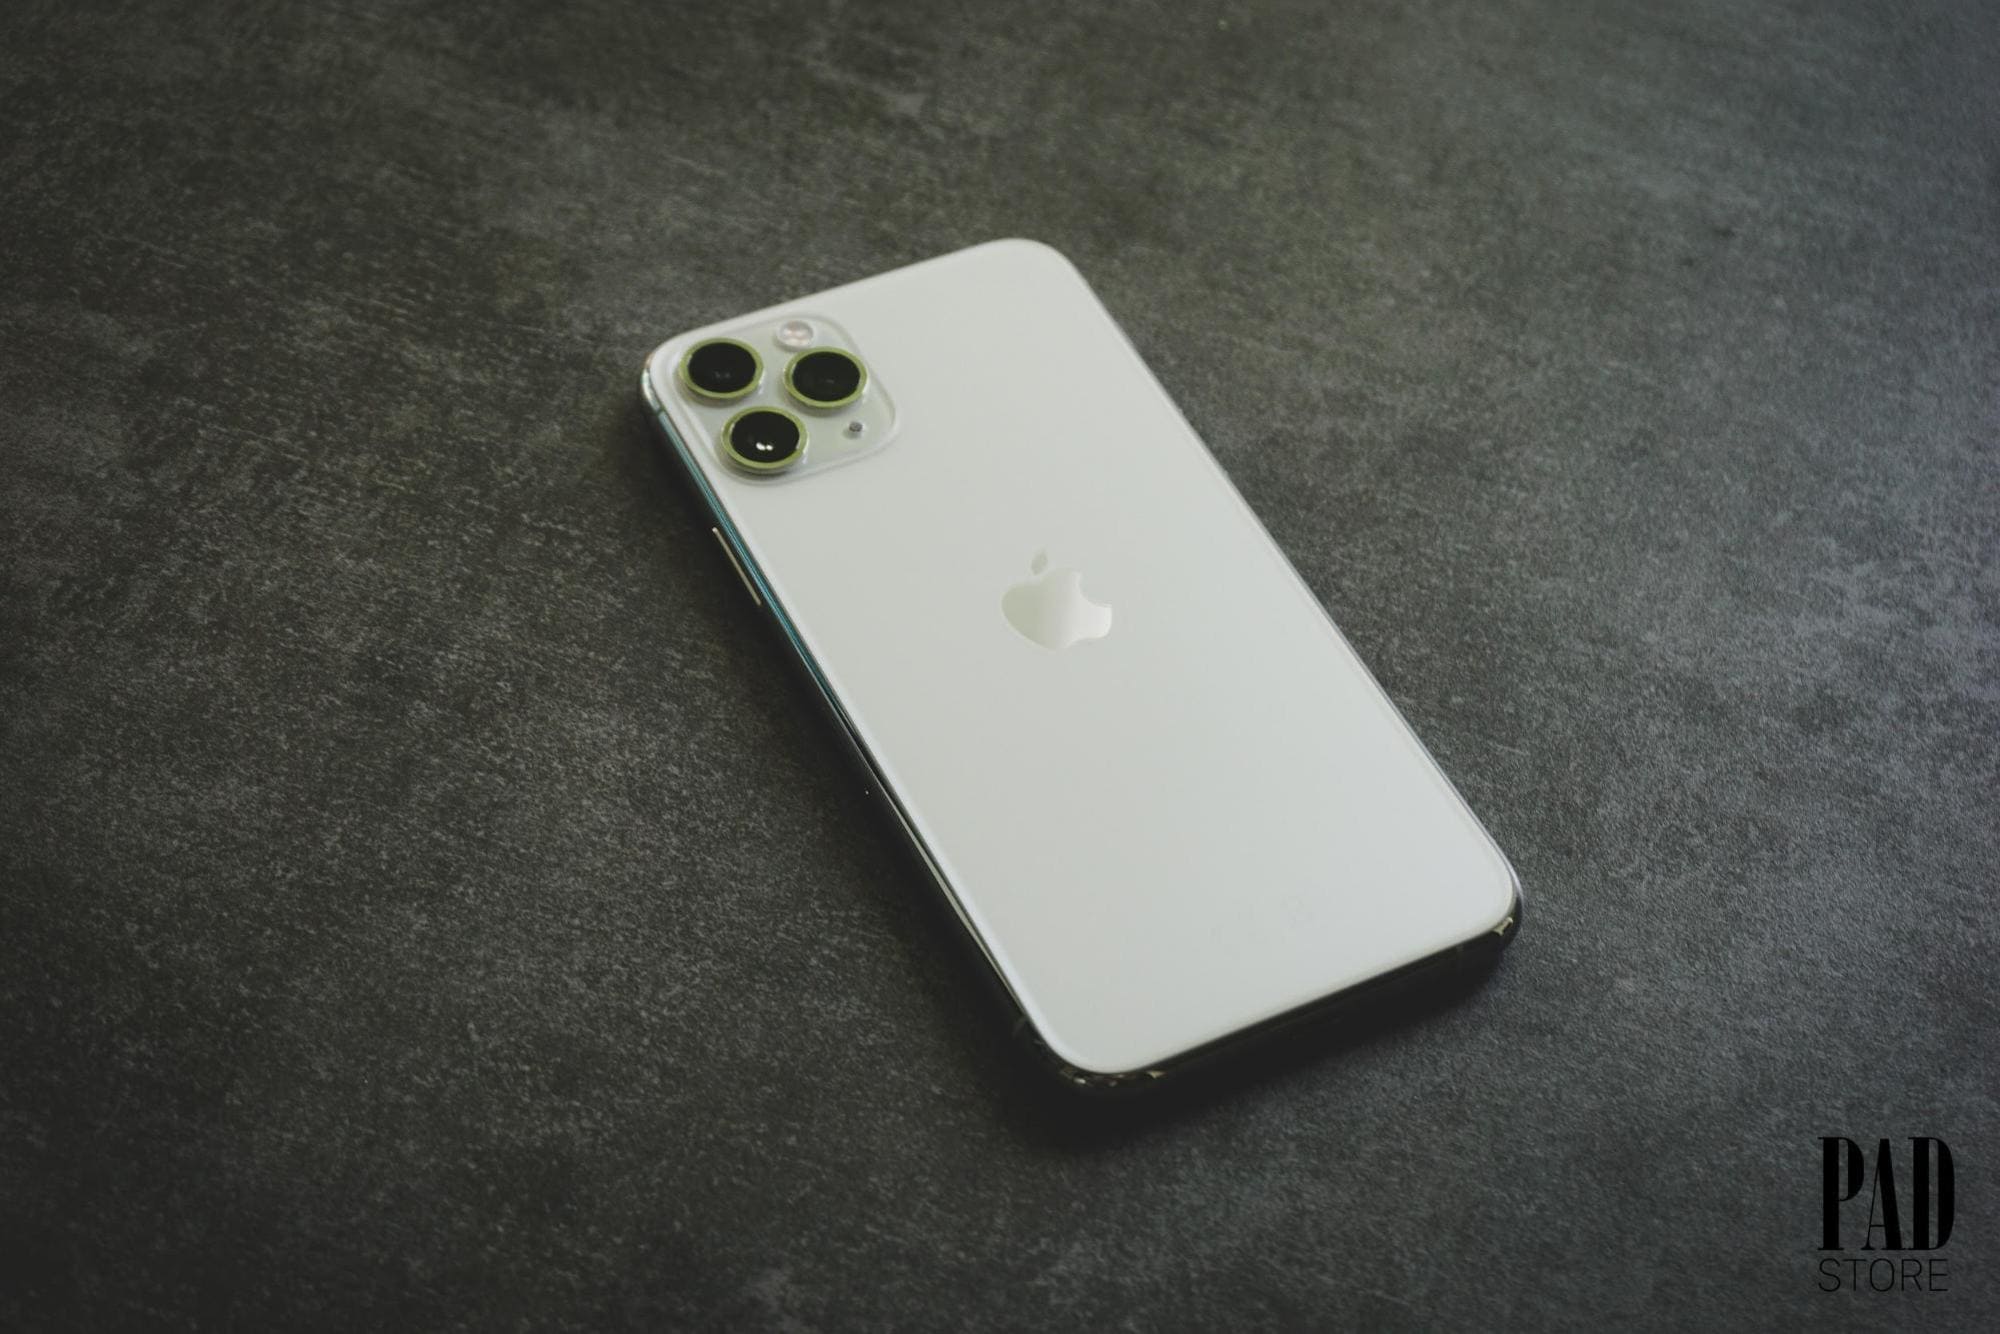 iPhone 11 Pro Max, màu sắc, đỉnh nhất - Sản phẩm iPhone 11 Pro Max màu sắc đỉnh nhất không chỉ là điều được mong đợi mà còn là một trải nghiệm tuyệt vời với những tính năng tối ưu cùng cấu hình khủng. Bạn sẽ không hối tiếc khi nhìn thấy chiếc iPhone 11 Pro Max này trên đôi tay mình. Cùng khám phá chi tiết sản phẩm và đắm chìm vào vẻ đẹp của nó.